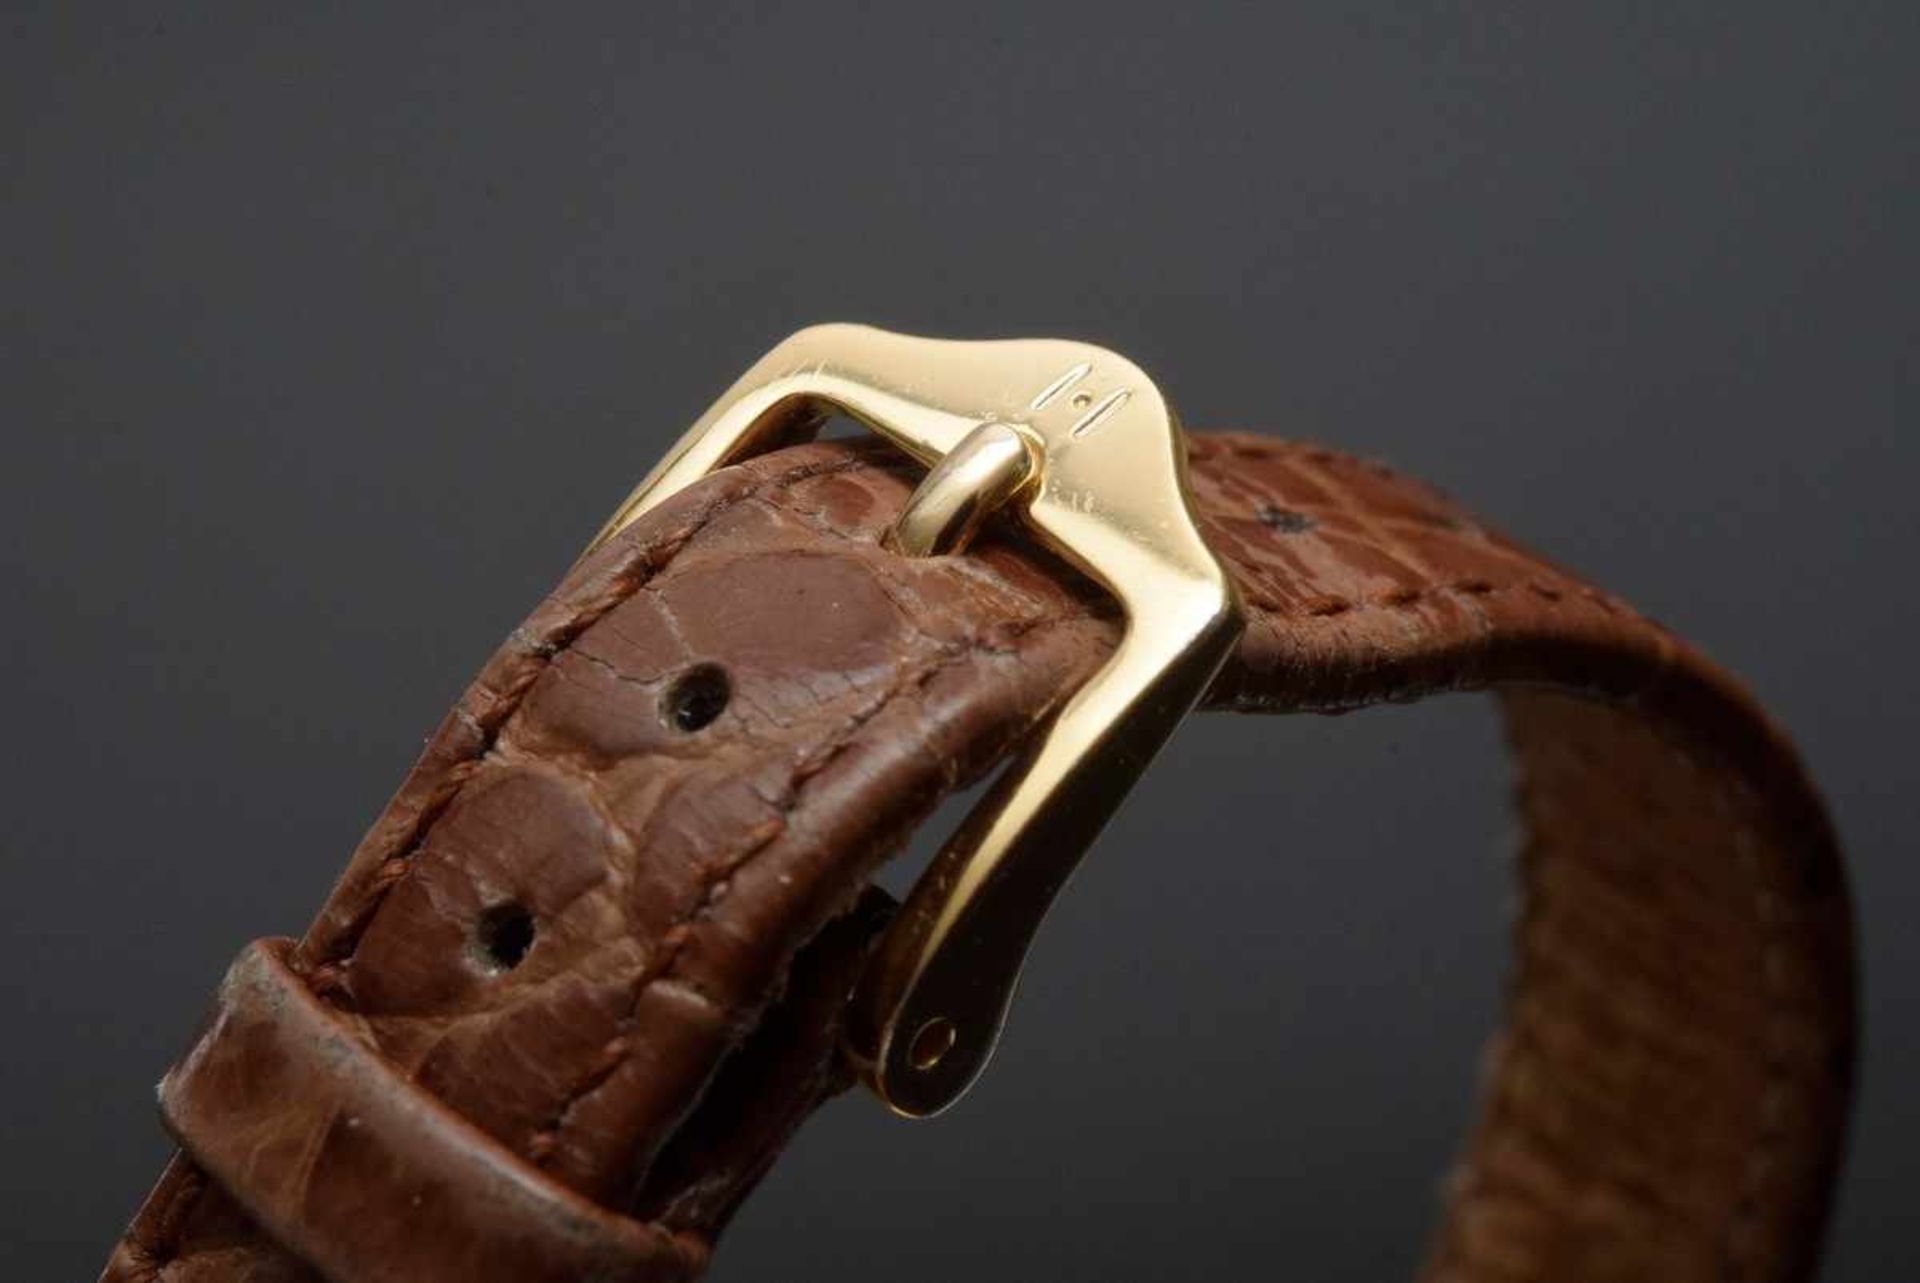 Ovale Baume & Mercier RG 750 Damenarmbanduhr, Automatic, Sekundenzeiger, römische Ziffern, - Bild 3 aus 3